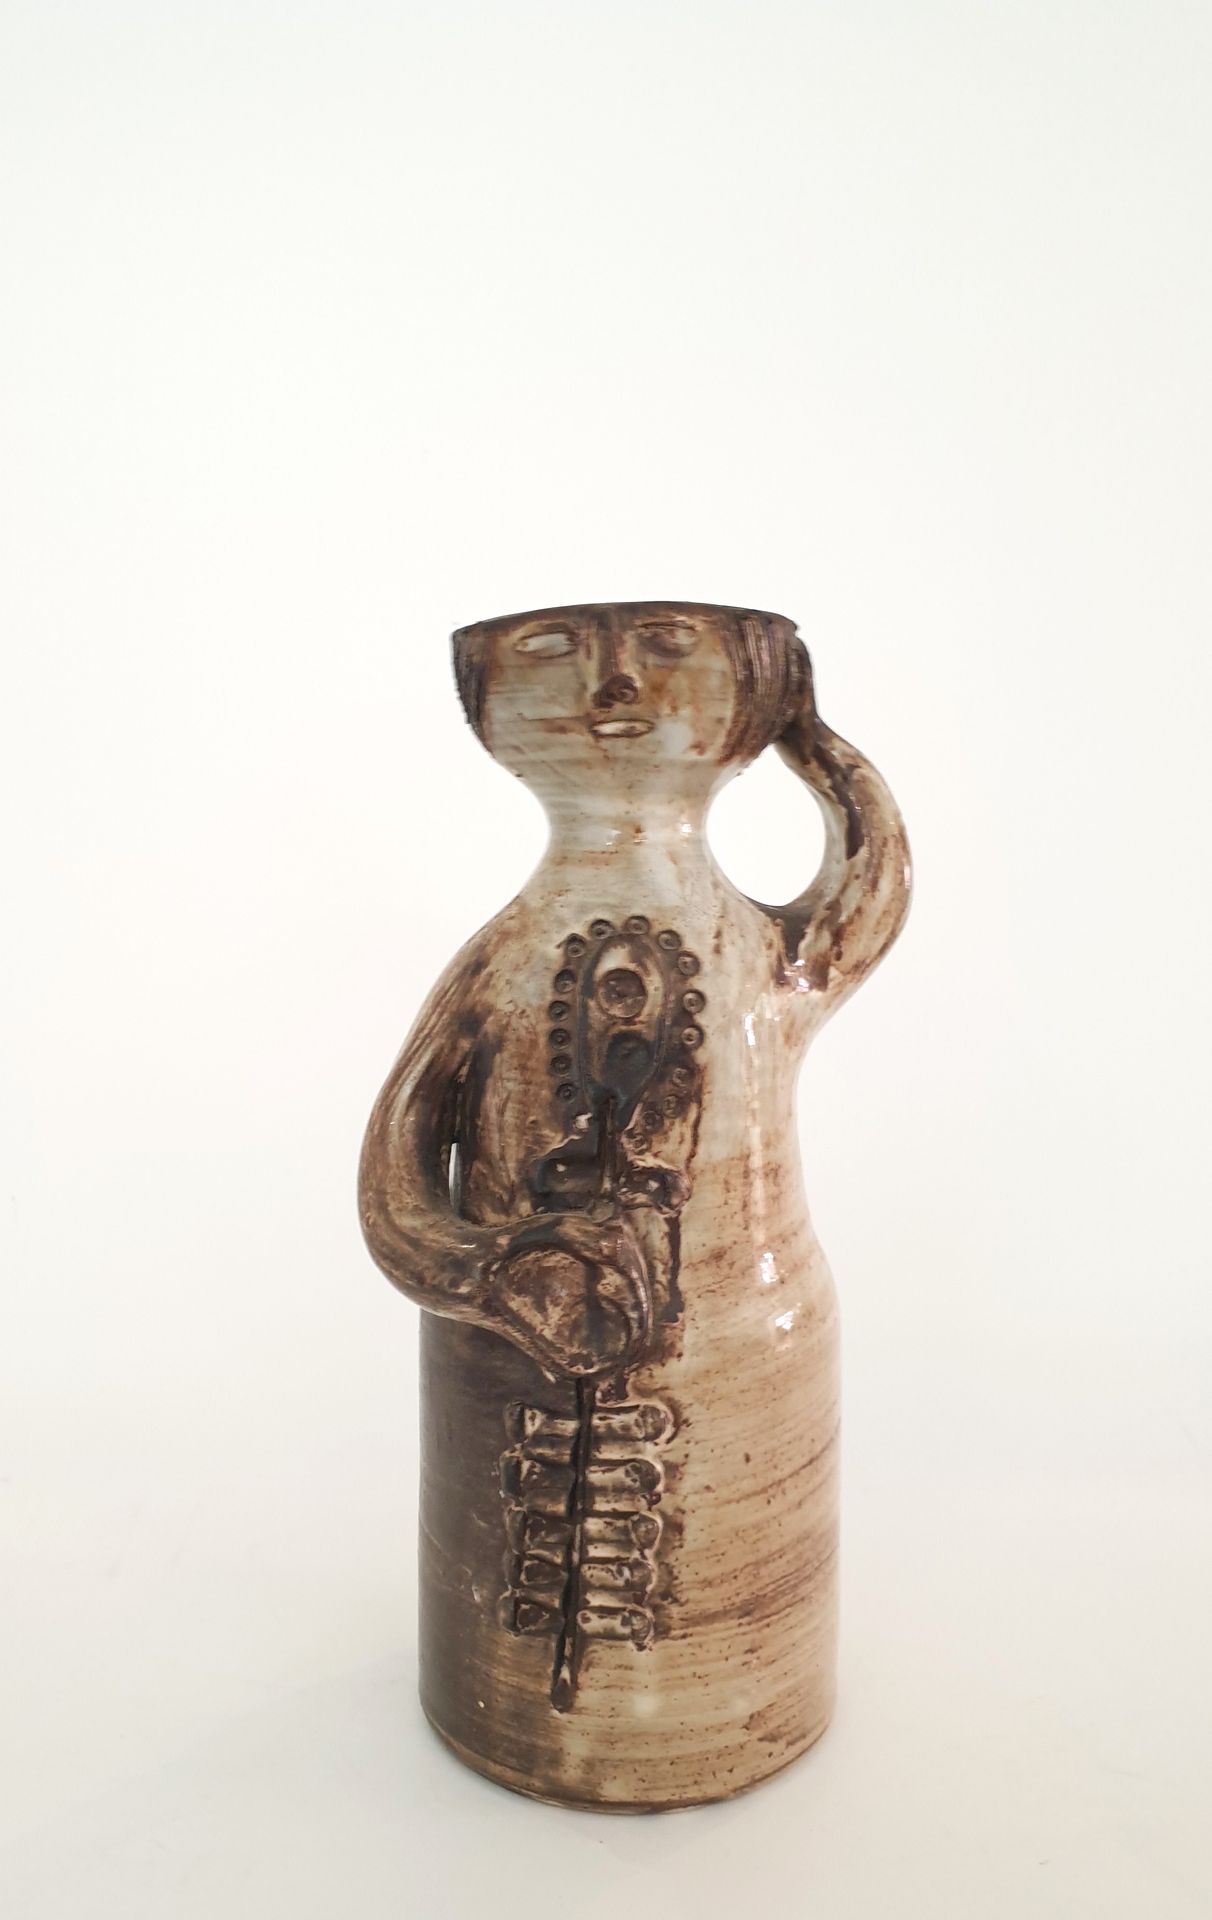 Null 雅克-普尚（1925-2015），迪耶勒菲特工作室
拟人化的花瓶，描绘了一位妇女，一只手放在腹部，另一只手放在头上，瓷器为棕色搪瓷。
底座下有签名
H&hellip;